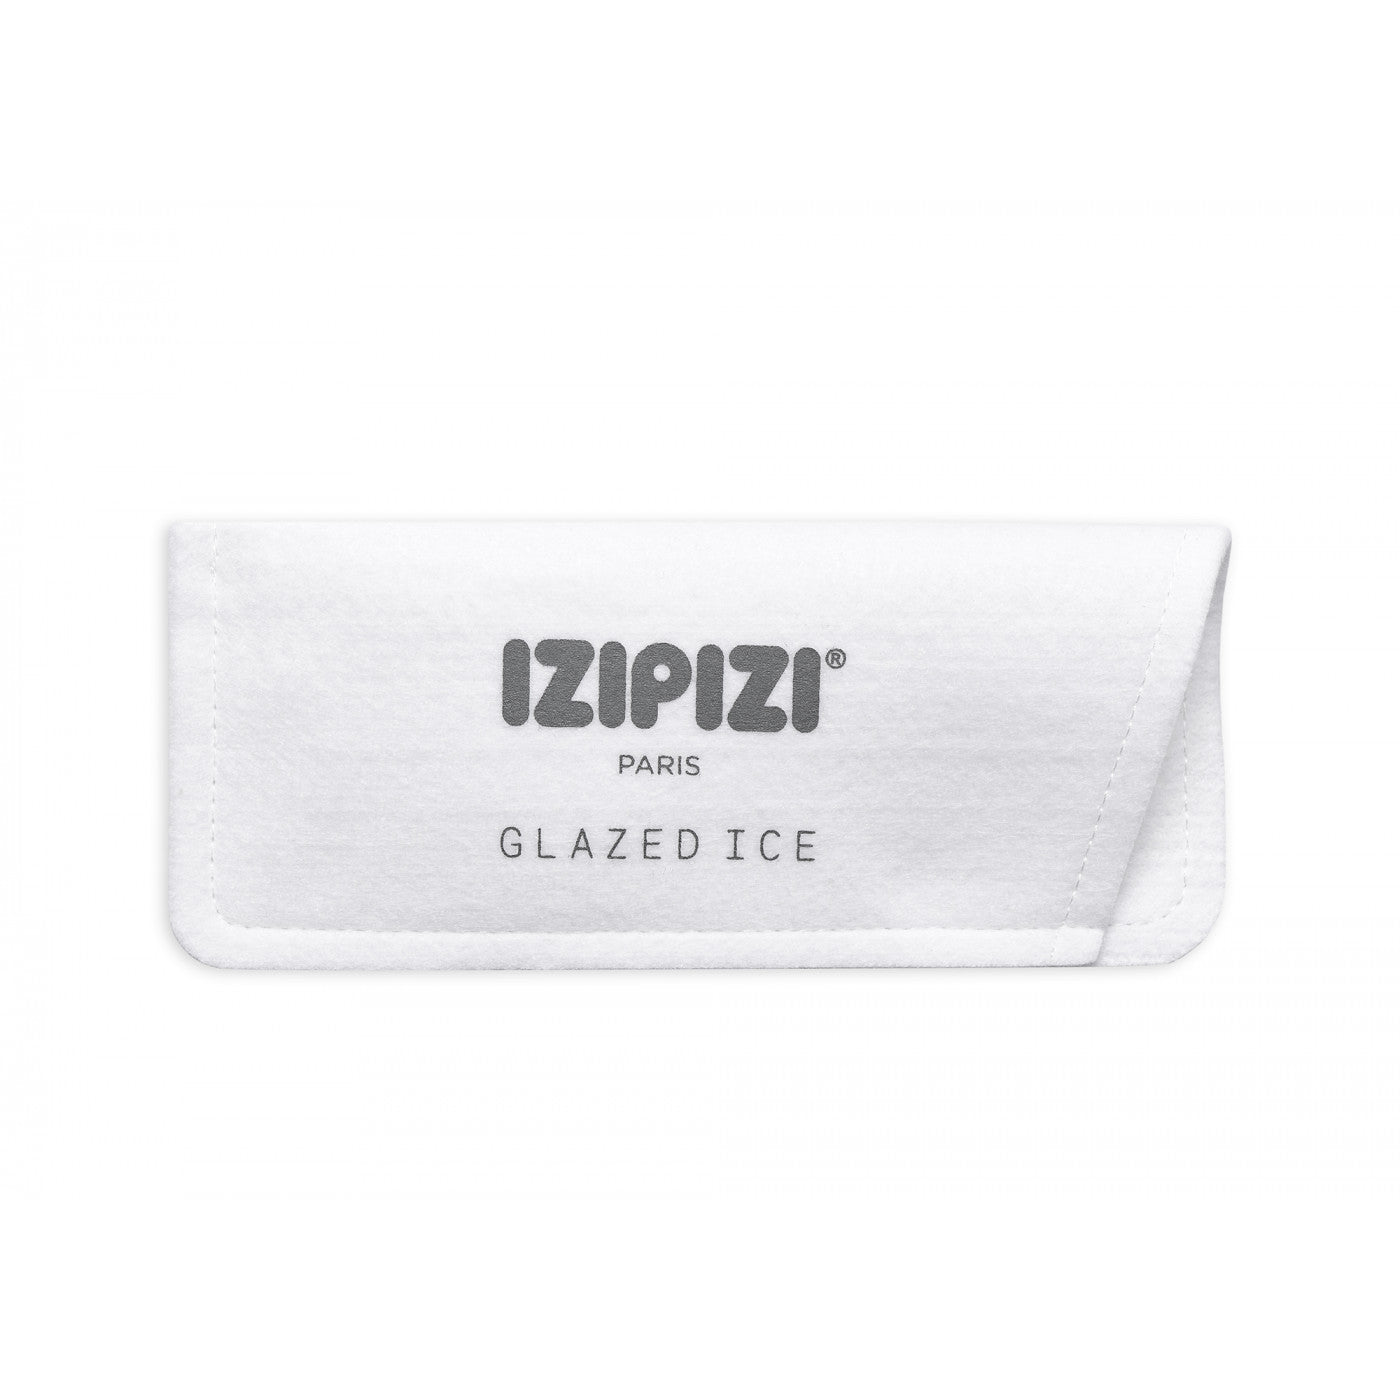 IZIPIZI Screen Reading D - Glazed Ice 2021